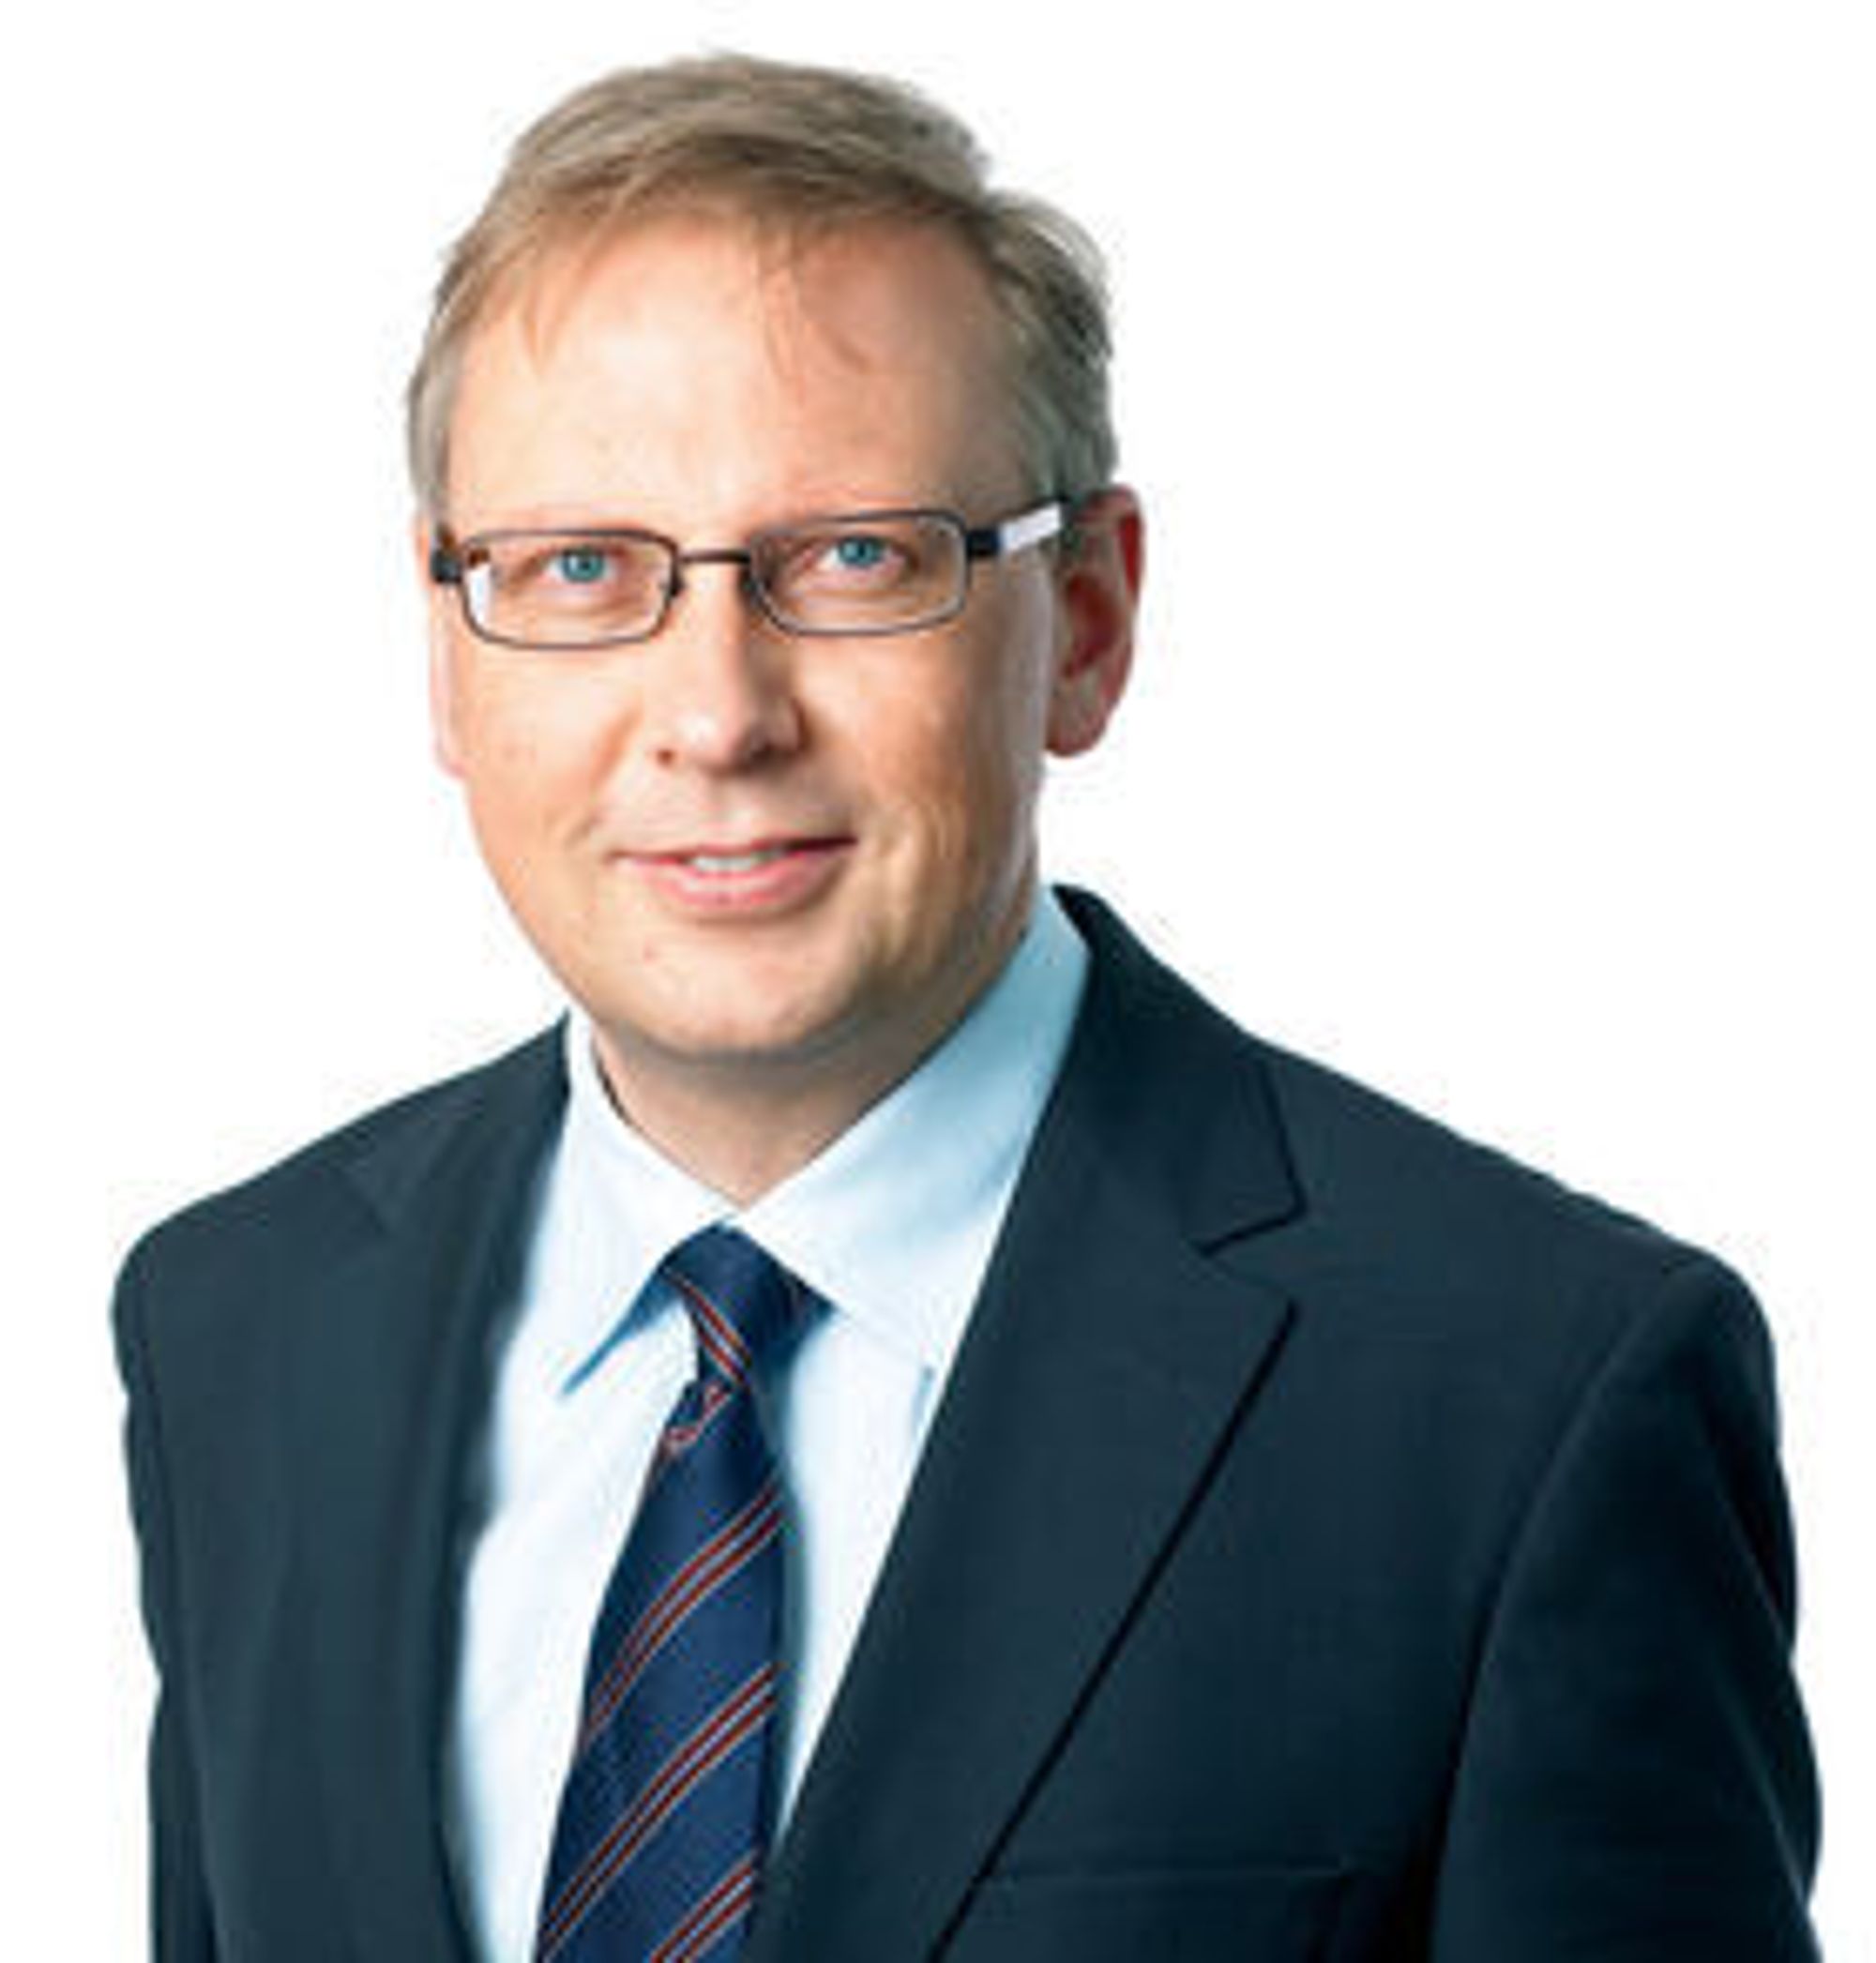 Geir Remman er kommunikasjonssjef i Evry, Norges største IT-selskap.